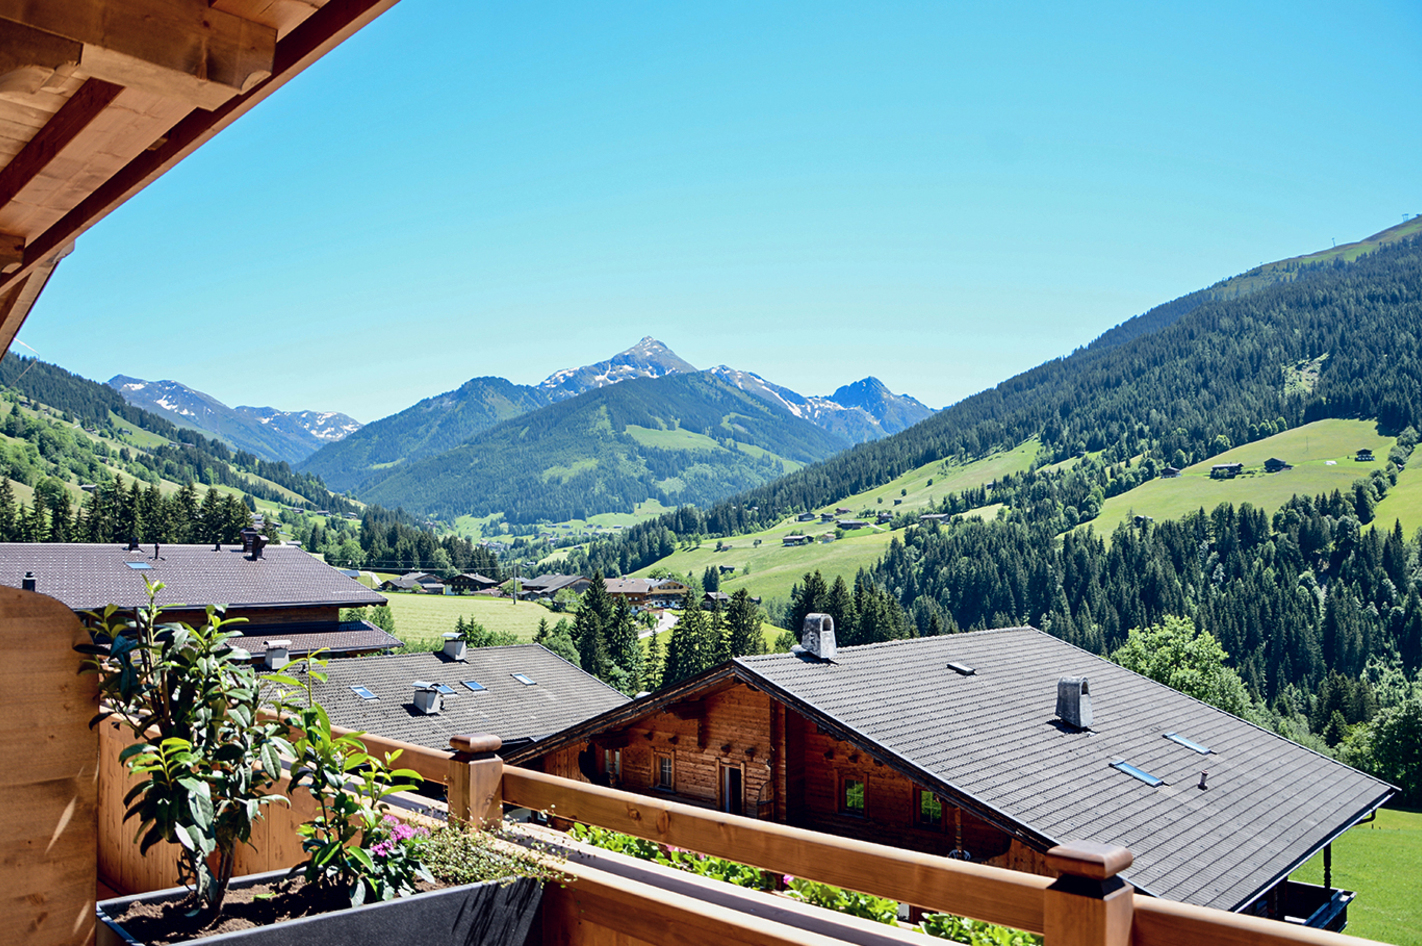 Außergewöhnlich Übernachten Alpbachtal für 2 (2 Nächte) – Die Berge rufen – Auf geht’s ins Alpbachtal!